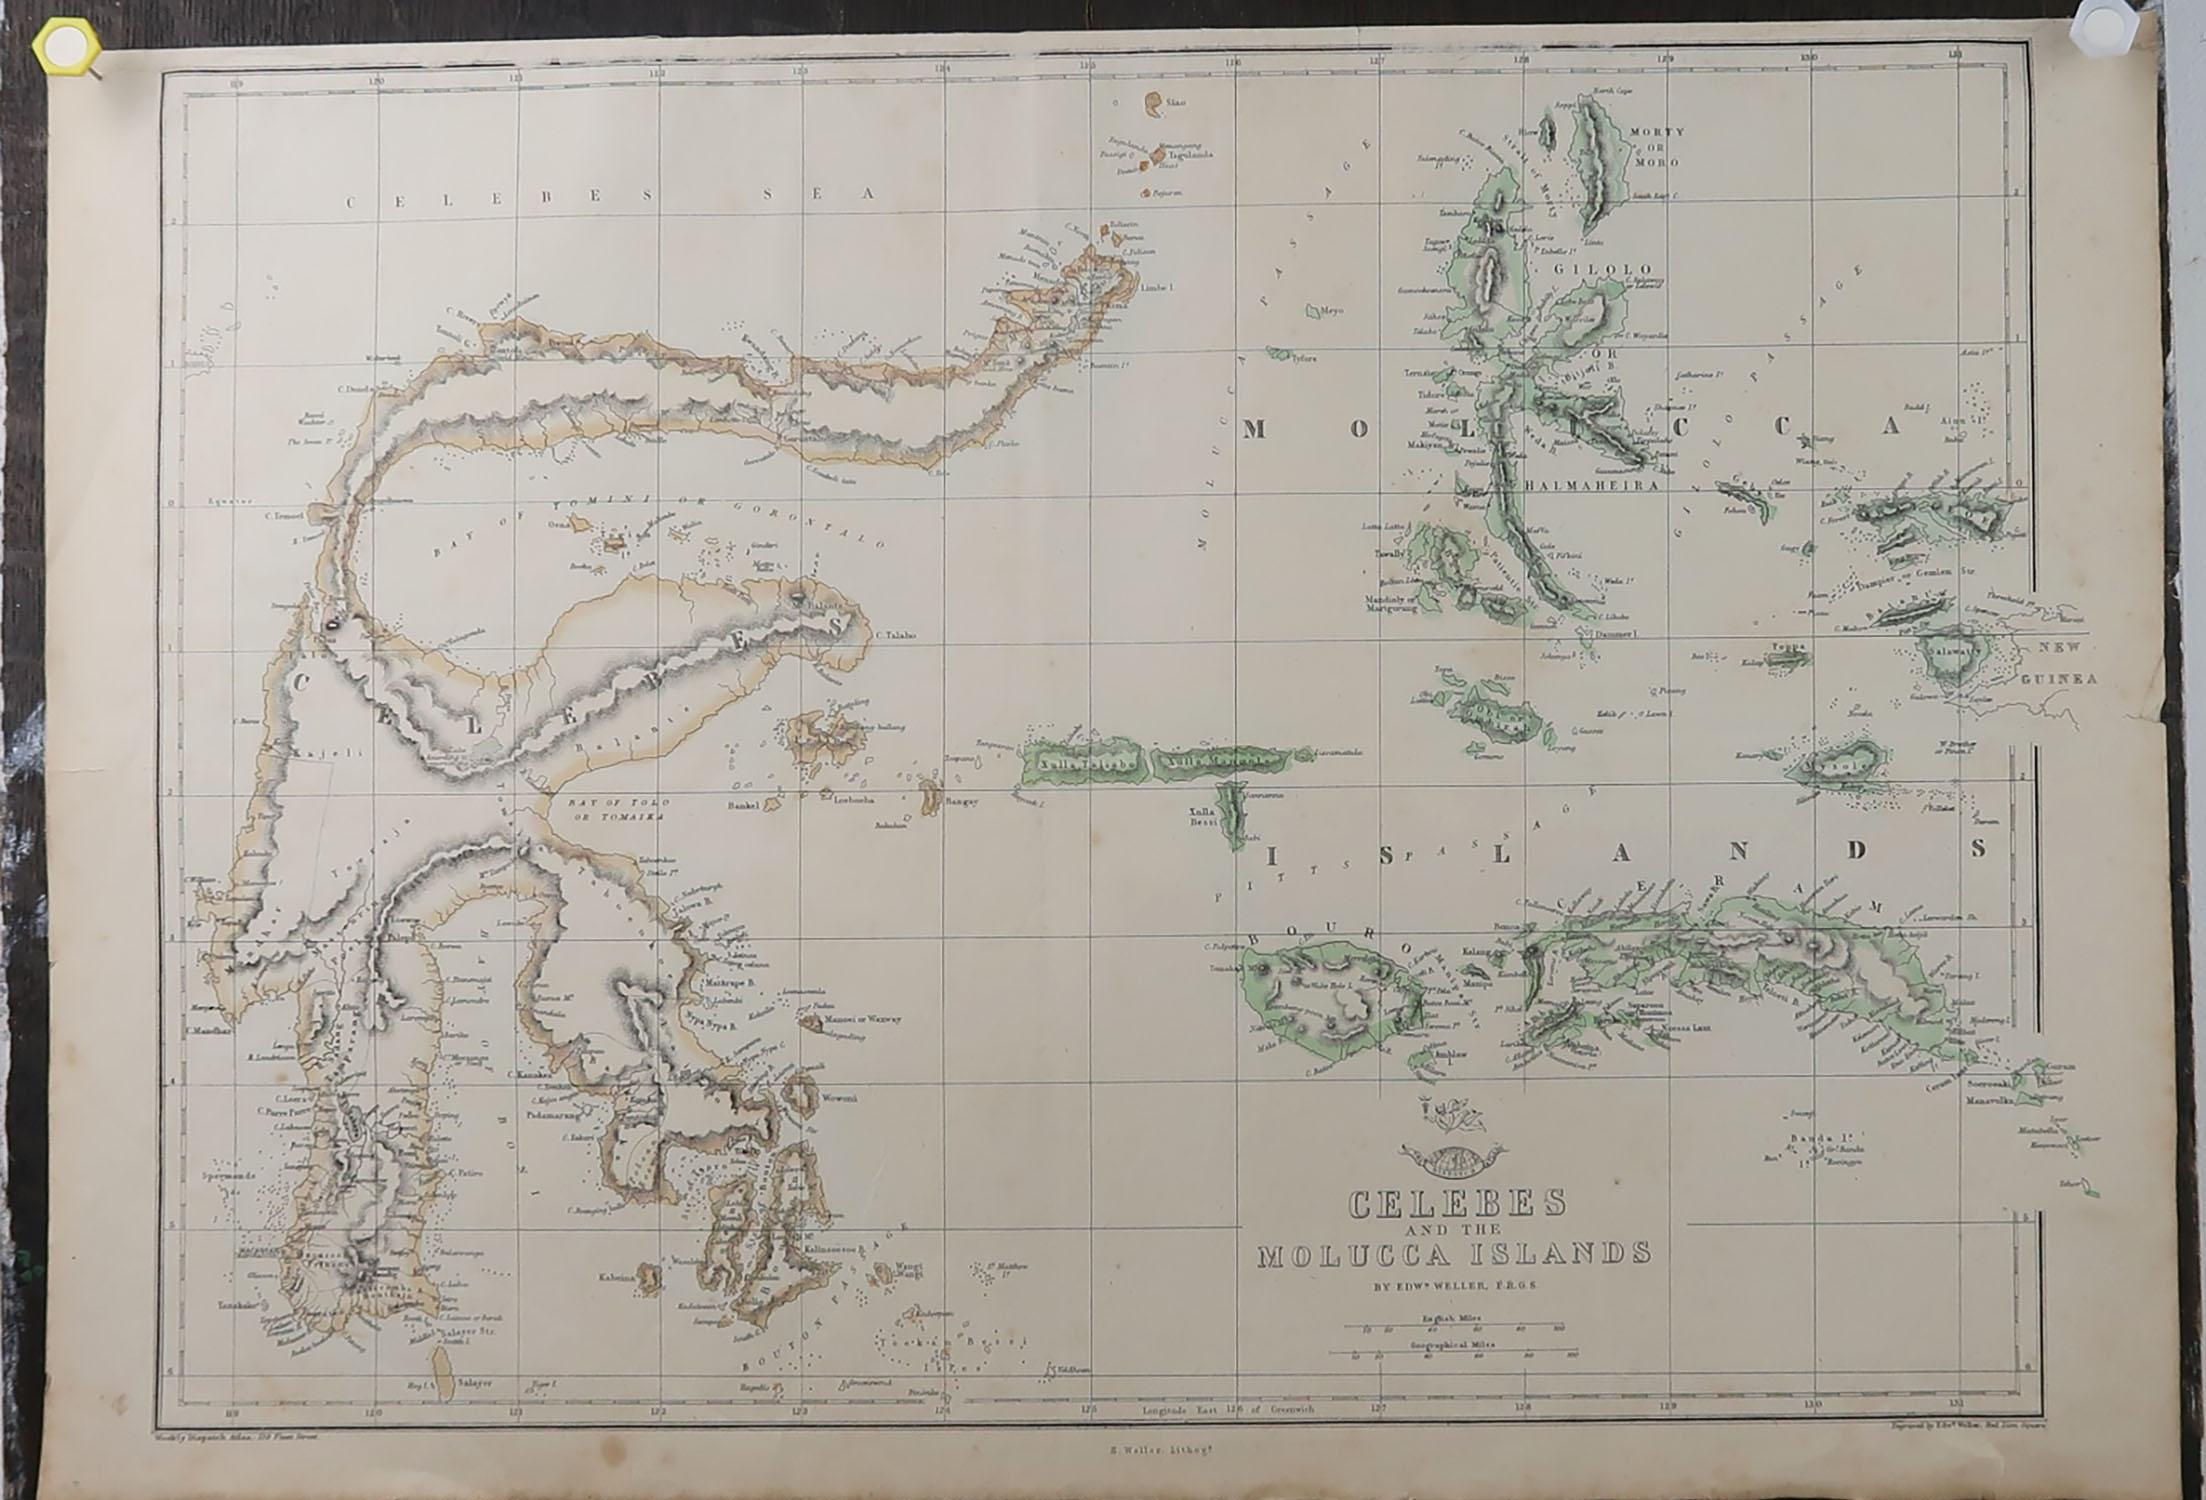 English Original Antique Map of Indonesia, 1861